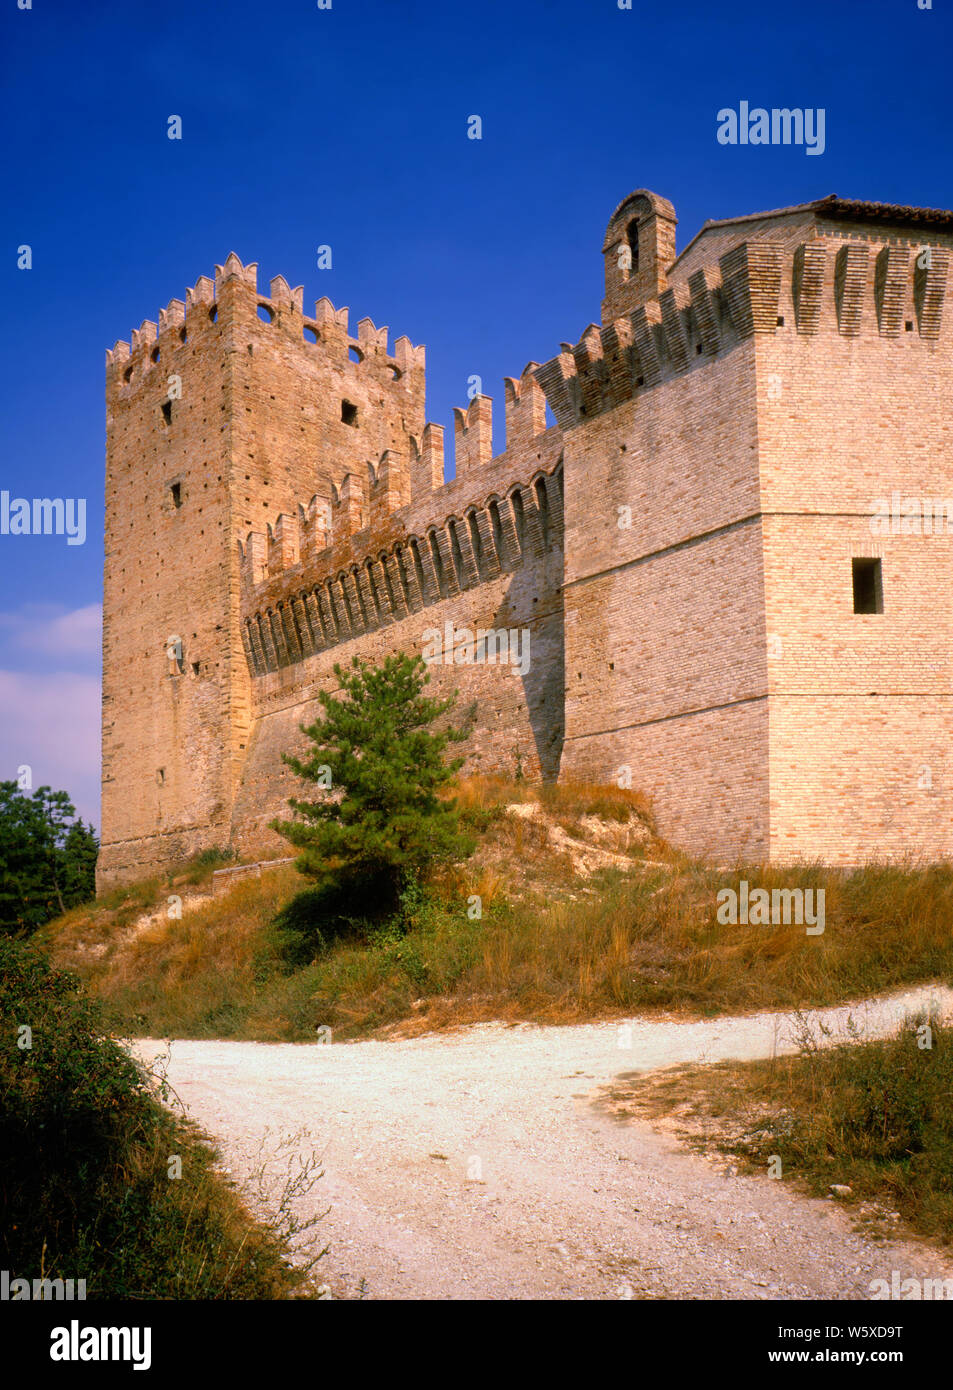 Rancia castle. Macerata. Stock Photo